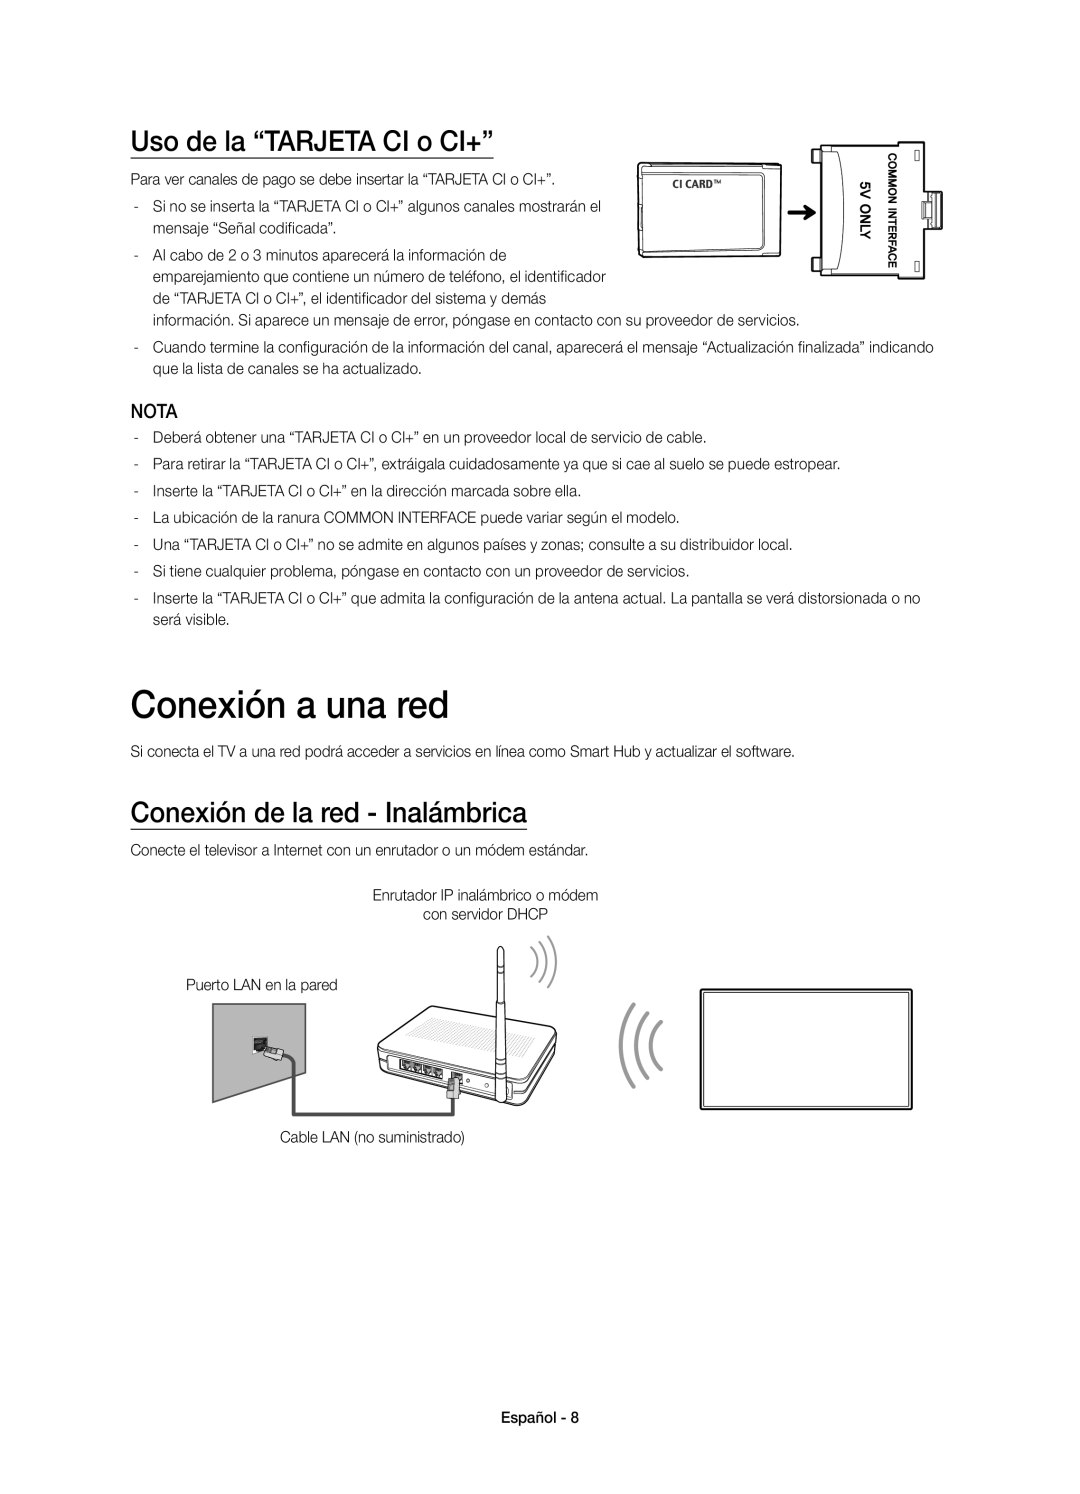 Samsung UE40H6410SSXXC manual Conexión a una red, Uso de la “TARJETA CI o CI+”, Conexión de la red - Inalámbrica, Nota 